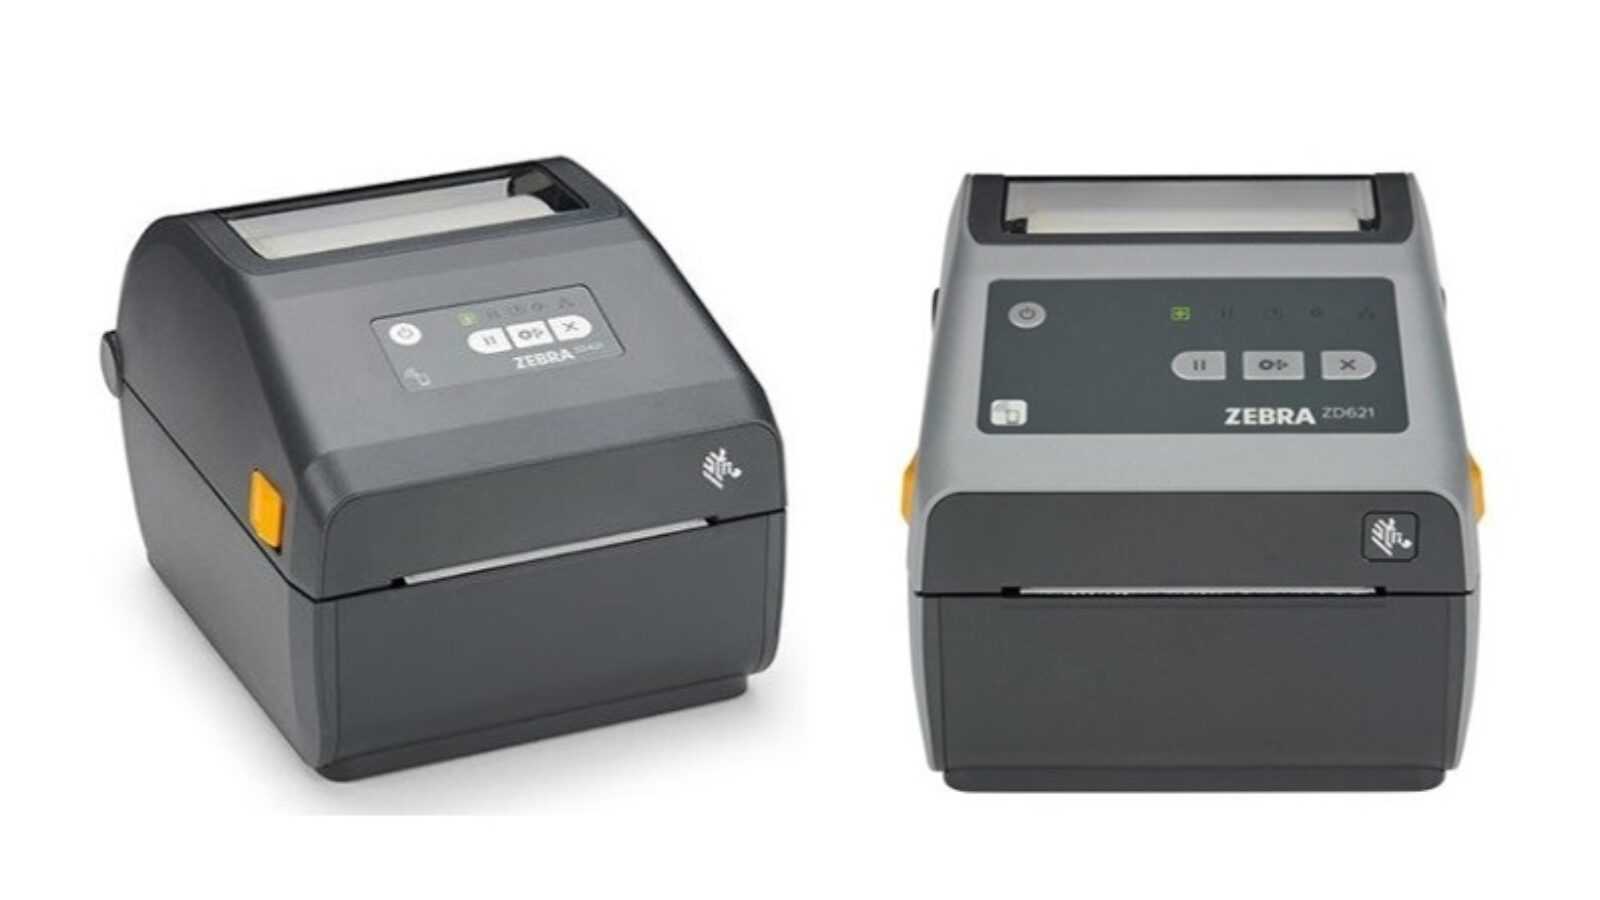 Zebra Zd421 And Zd621 Label Printers In The Spotlight Codipack 9082